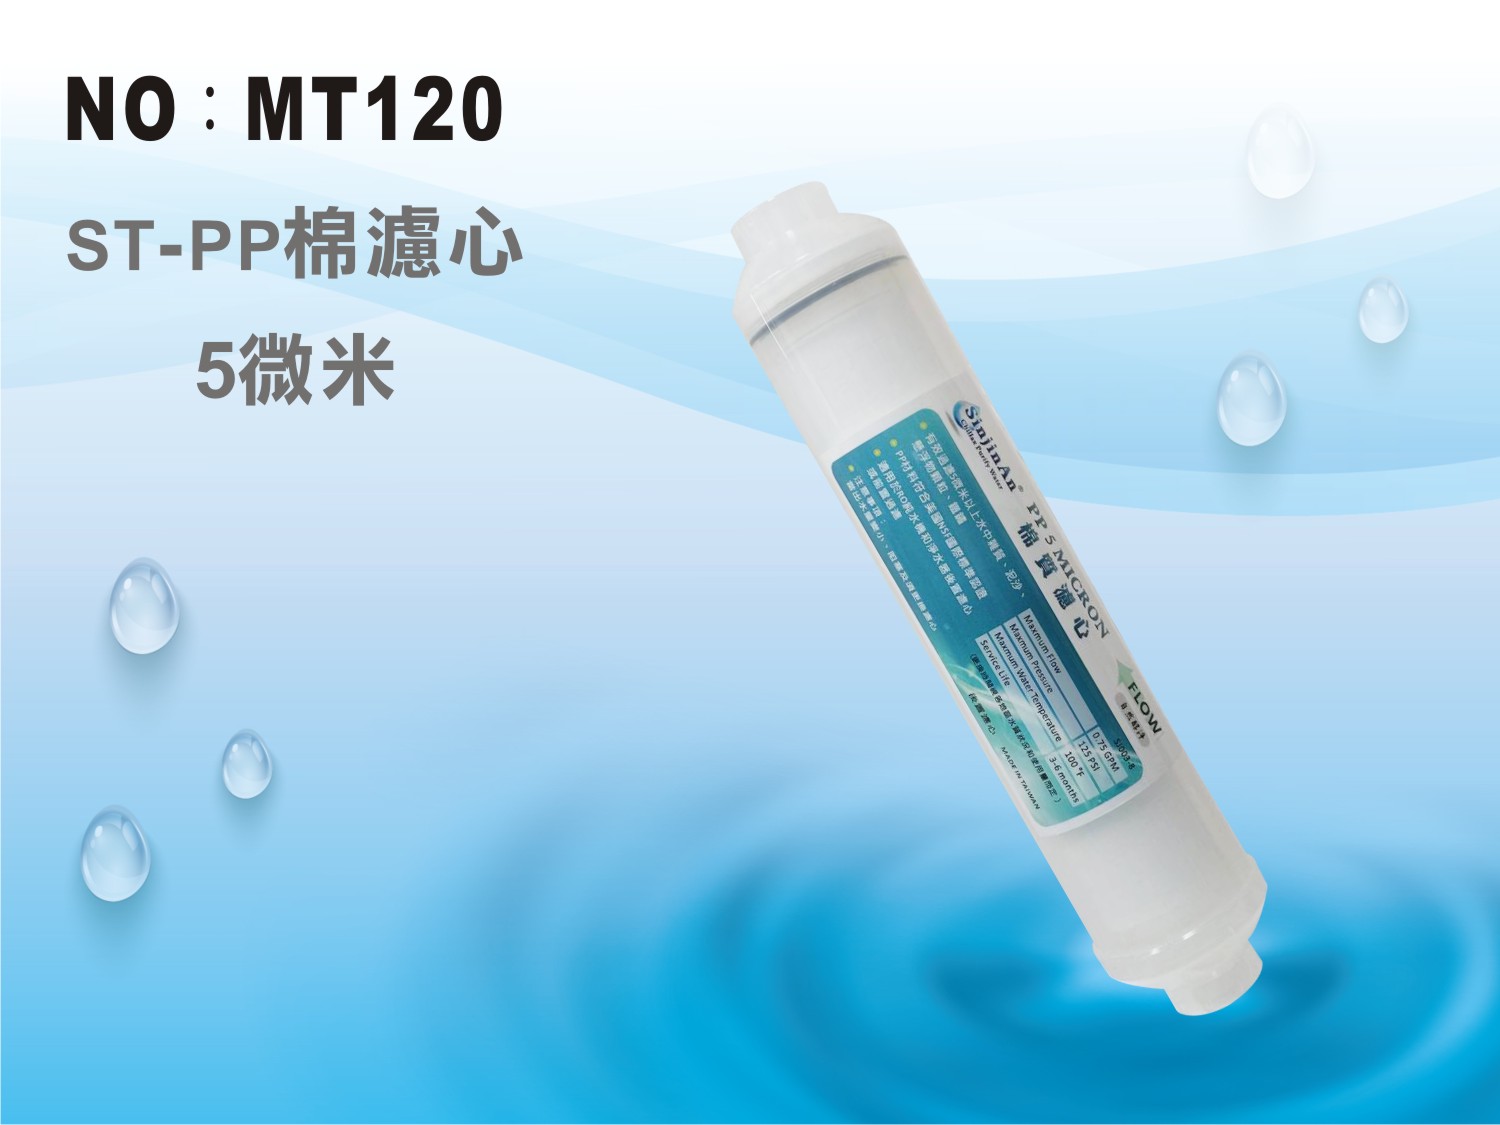 【龍門淨水】ST PP5m綿質濾心 材料NSF認證 後置 RO純水機 淨水器 飲水機(MT120)